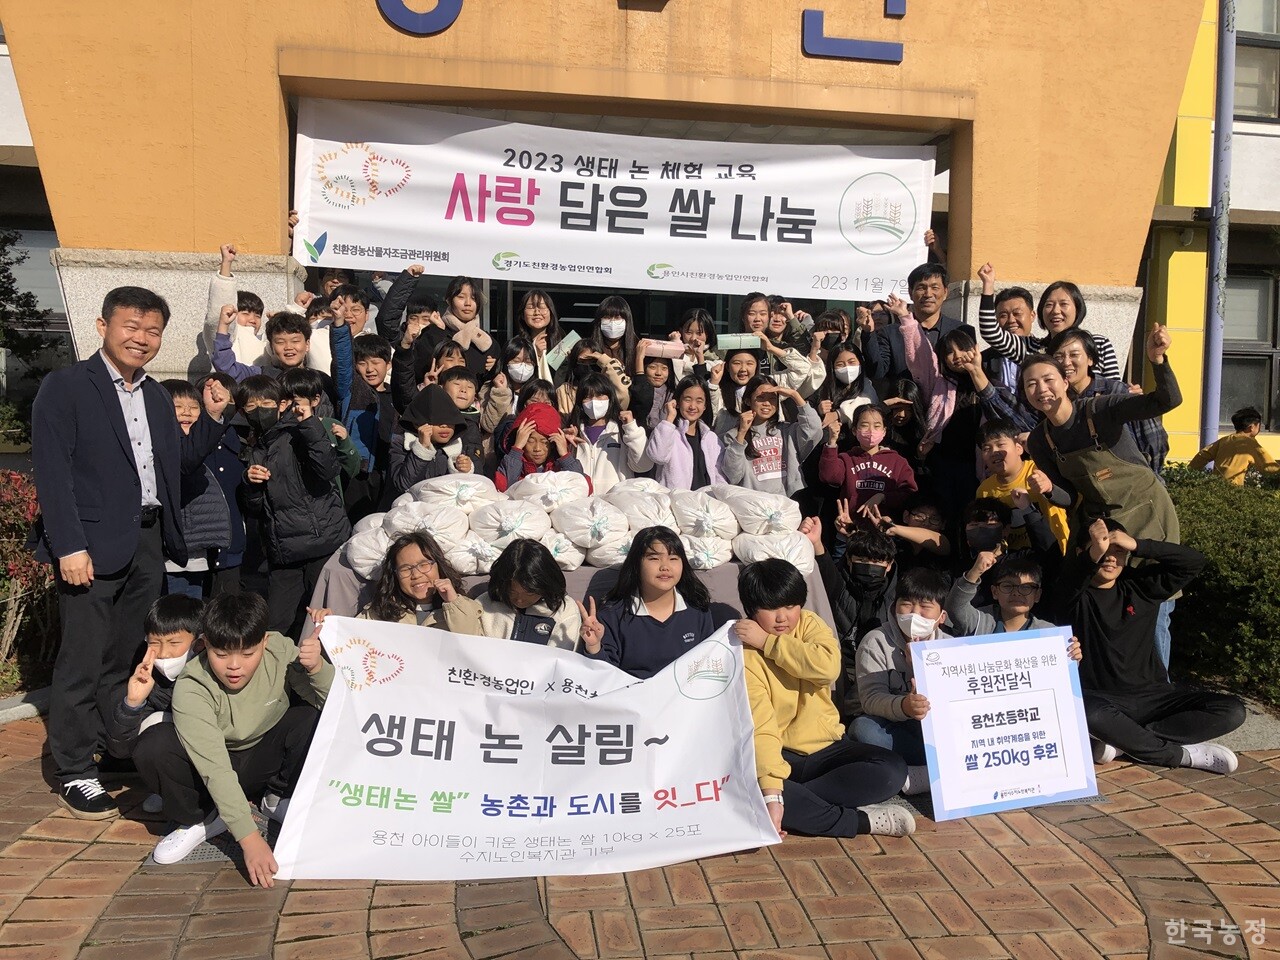 지난 7일 용인시 용천초등학교 본관 앞에서 열린 ‘2023 생태 논 체험 교육 - 사랑 담은 쌀 나눔’ 행사 직후 한자리에 모인 행사 참가자들.